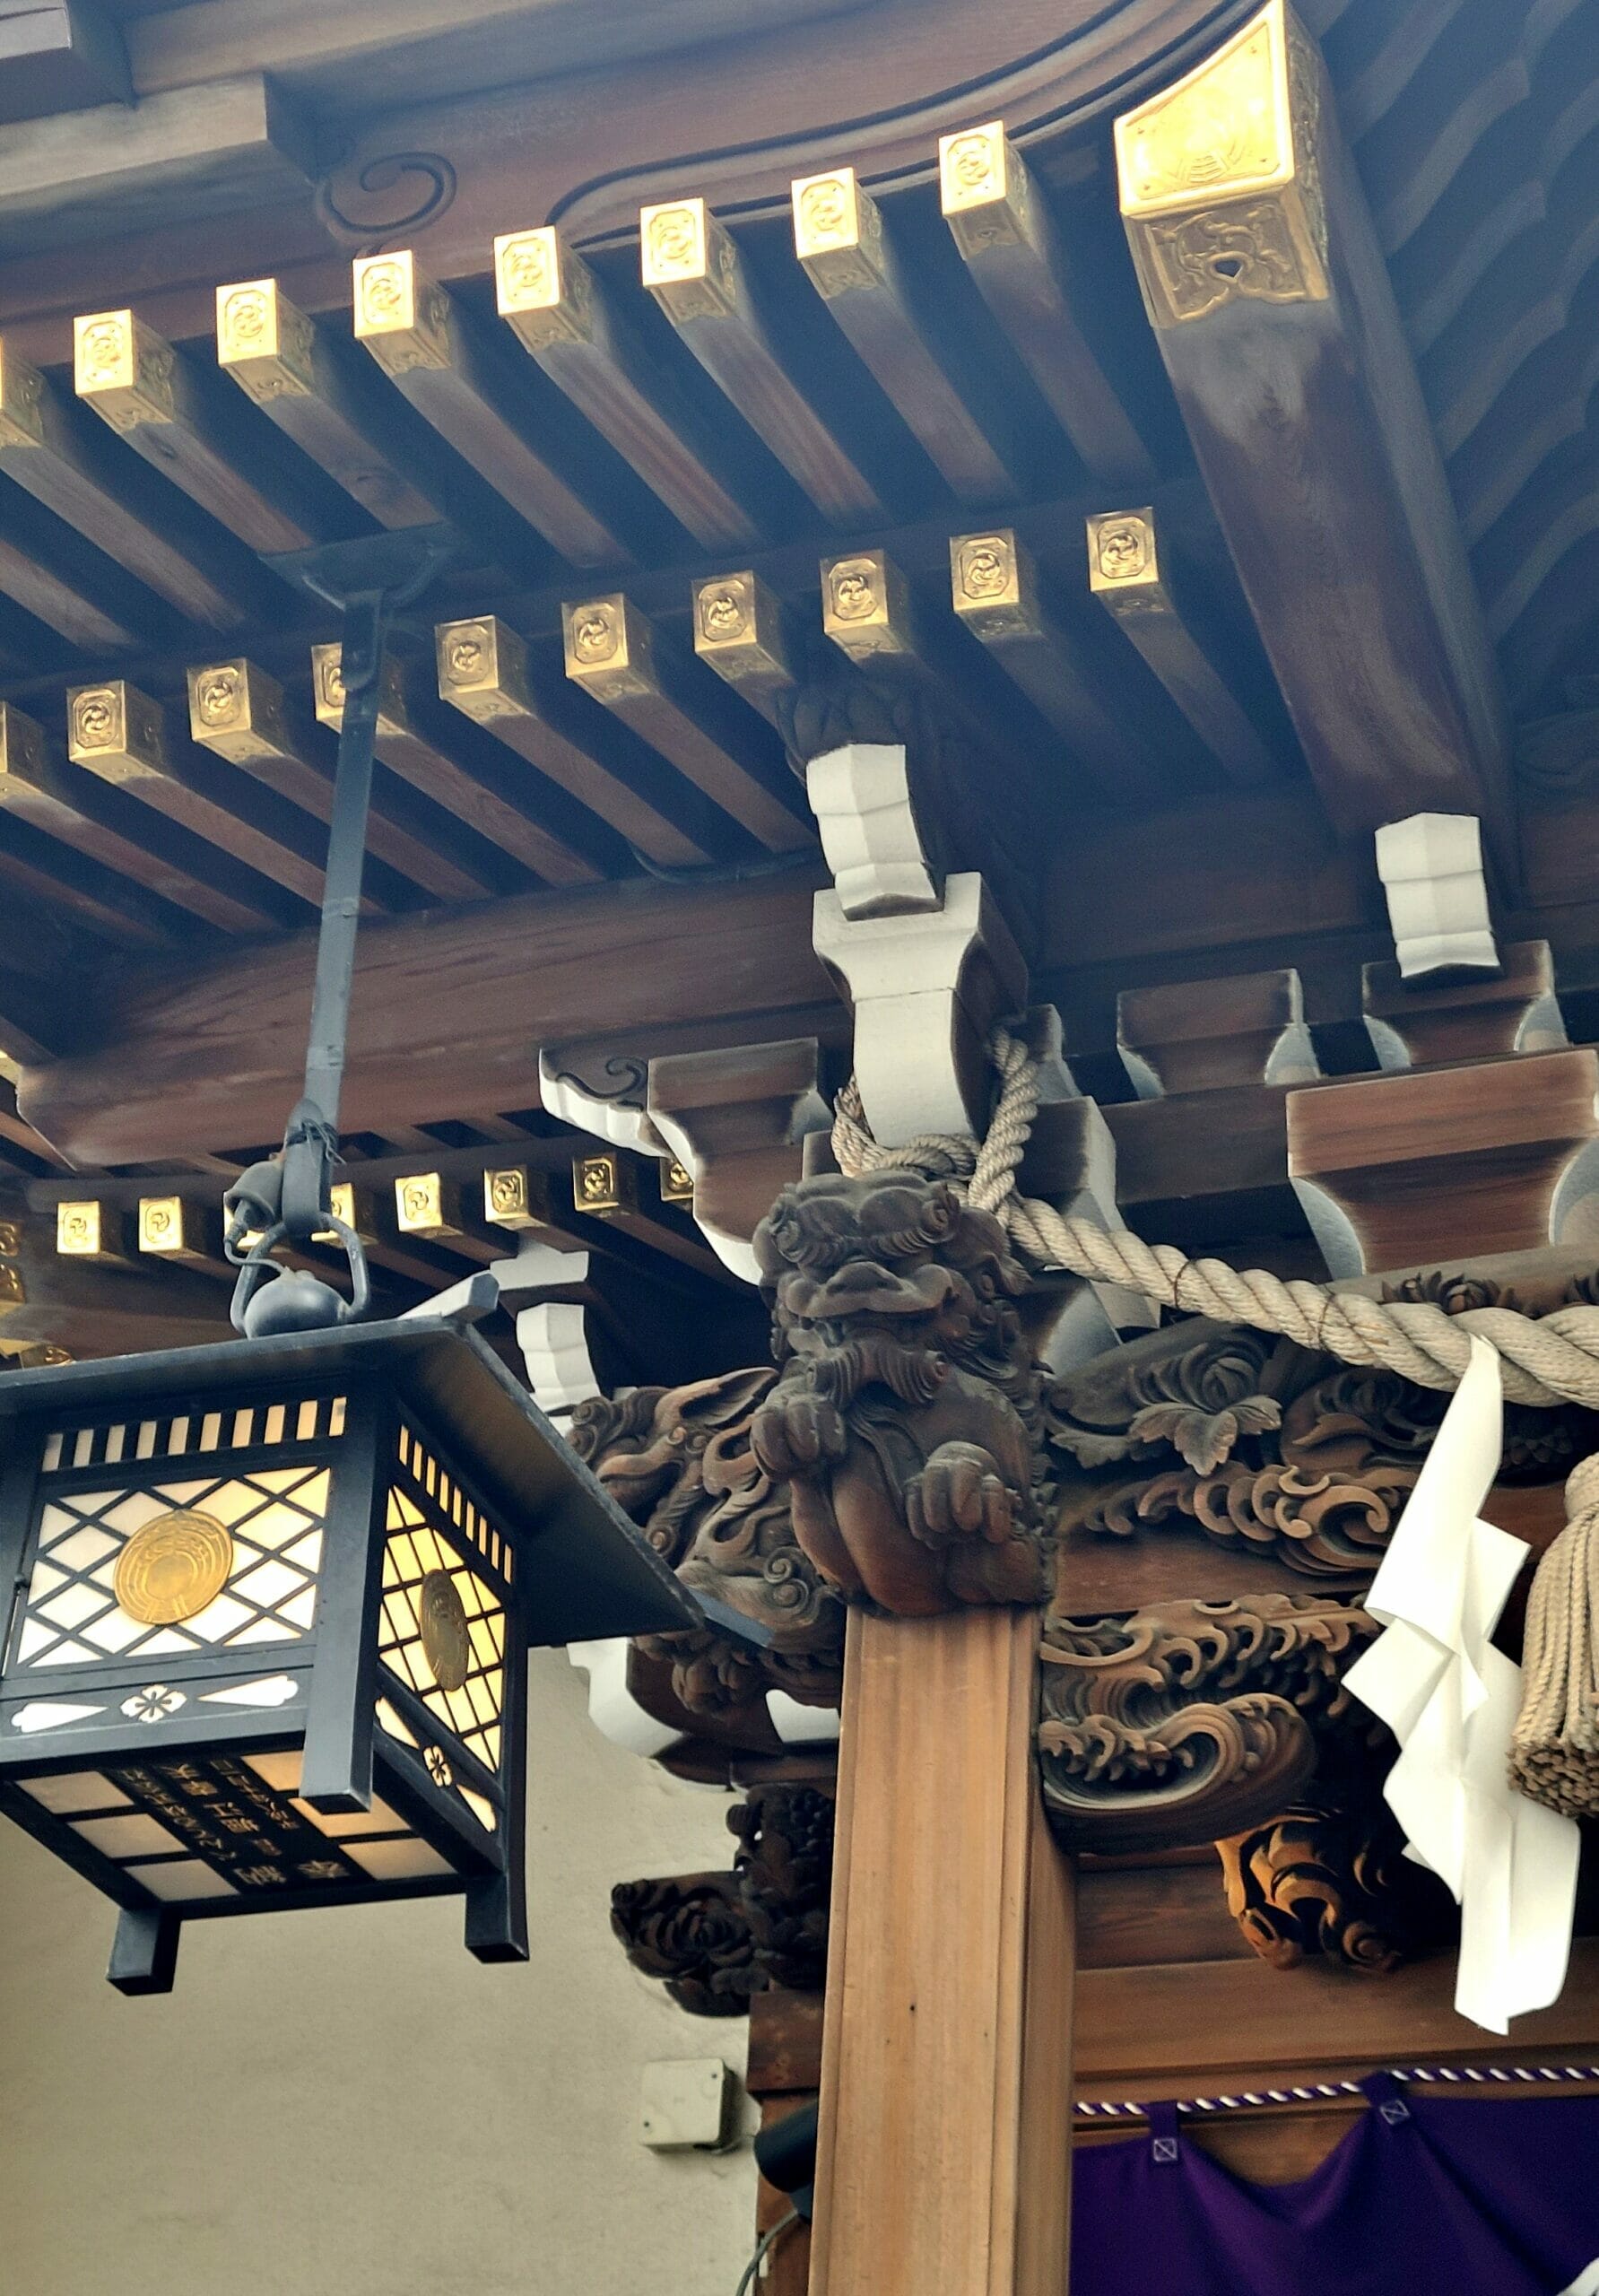 小網神社の社殿